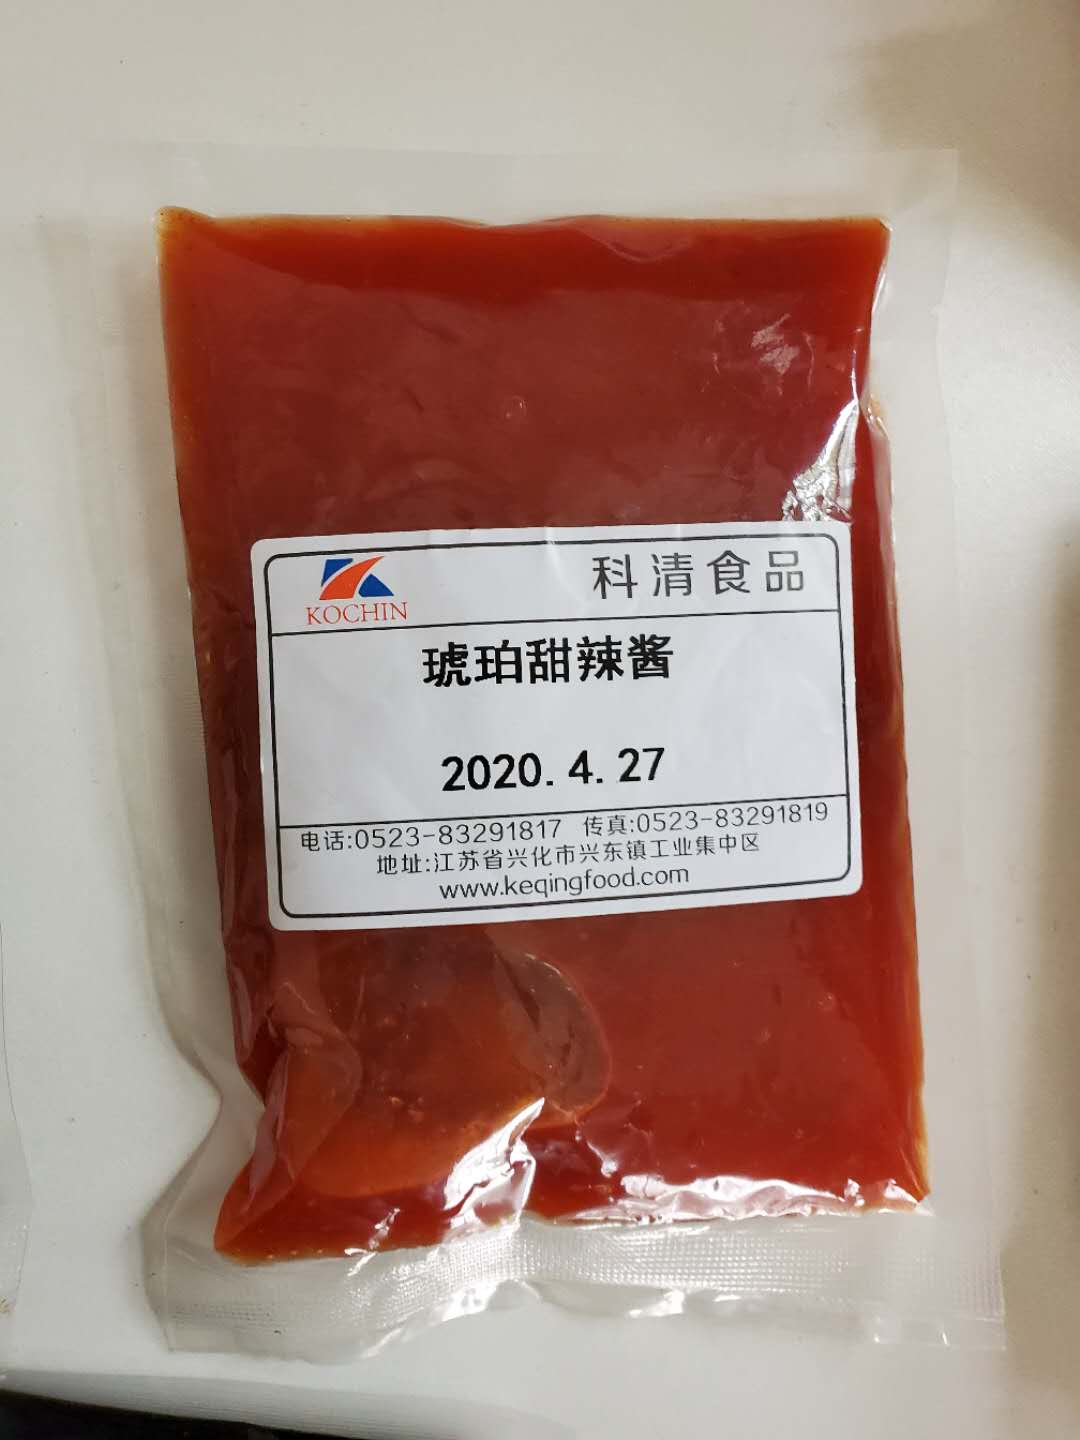 科清韩式炸鸡酱厂家批发 1kg商用装韩式炸鸡酱直销可代加工6